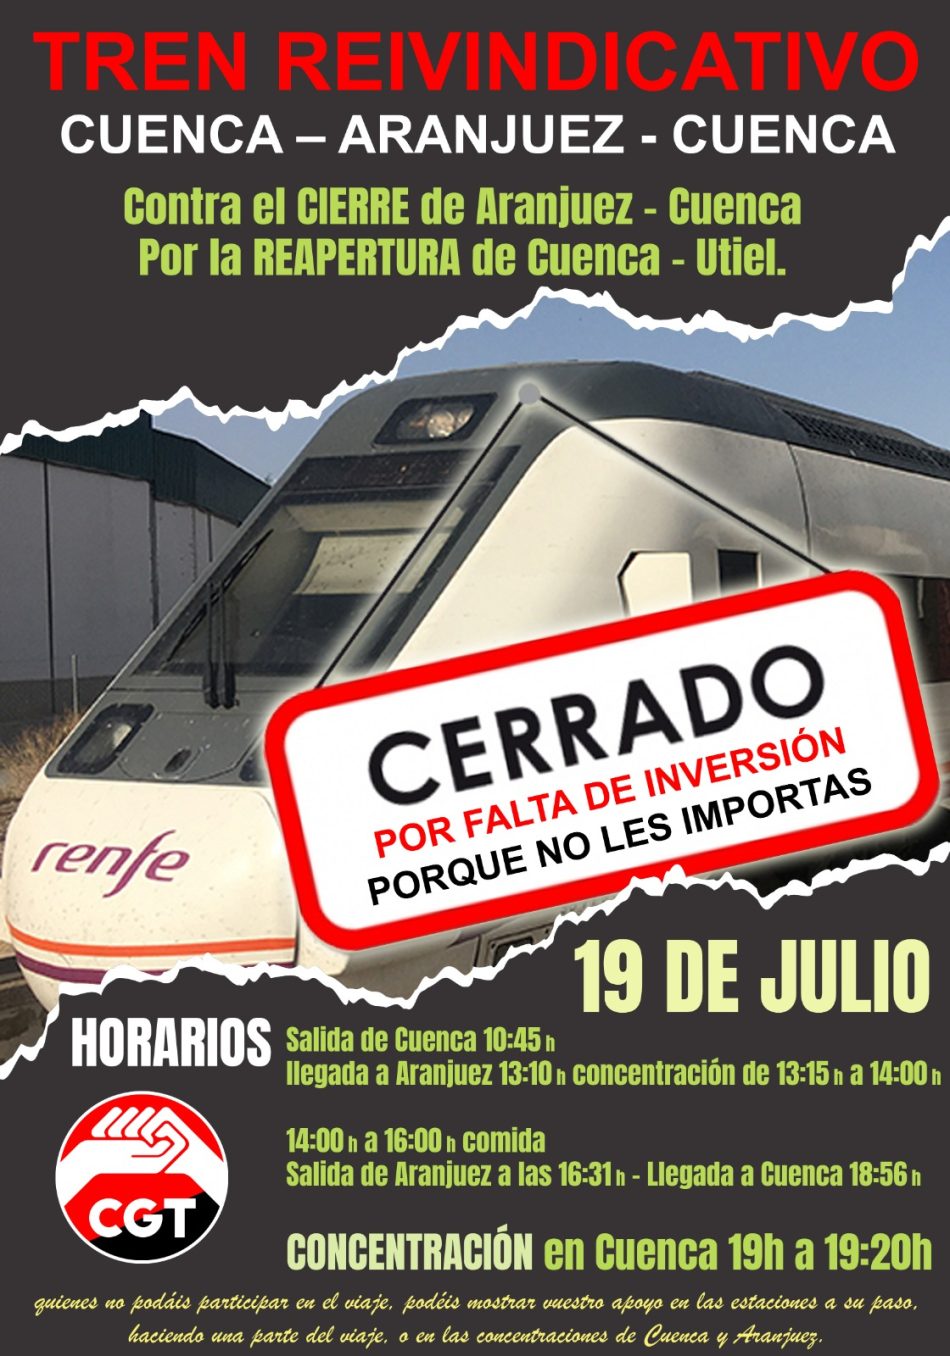 Tren reivindicativo Utiel-Cuenca-Aranjuez: convocada concentración el 19 de julio